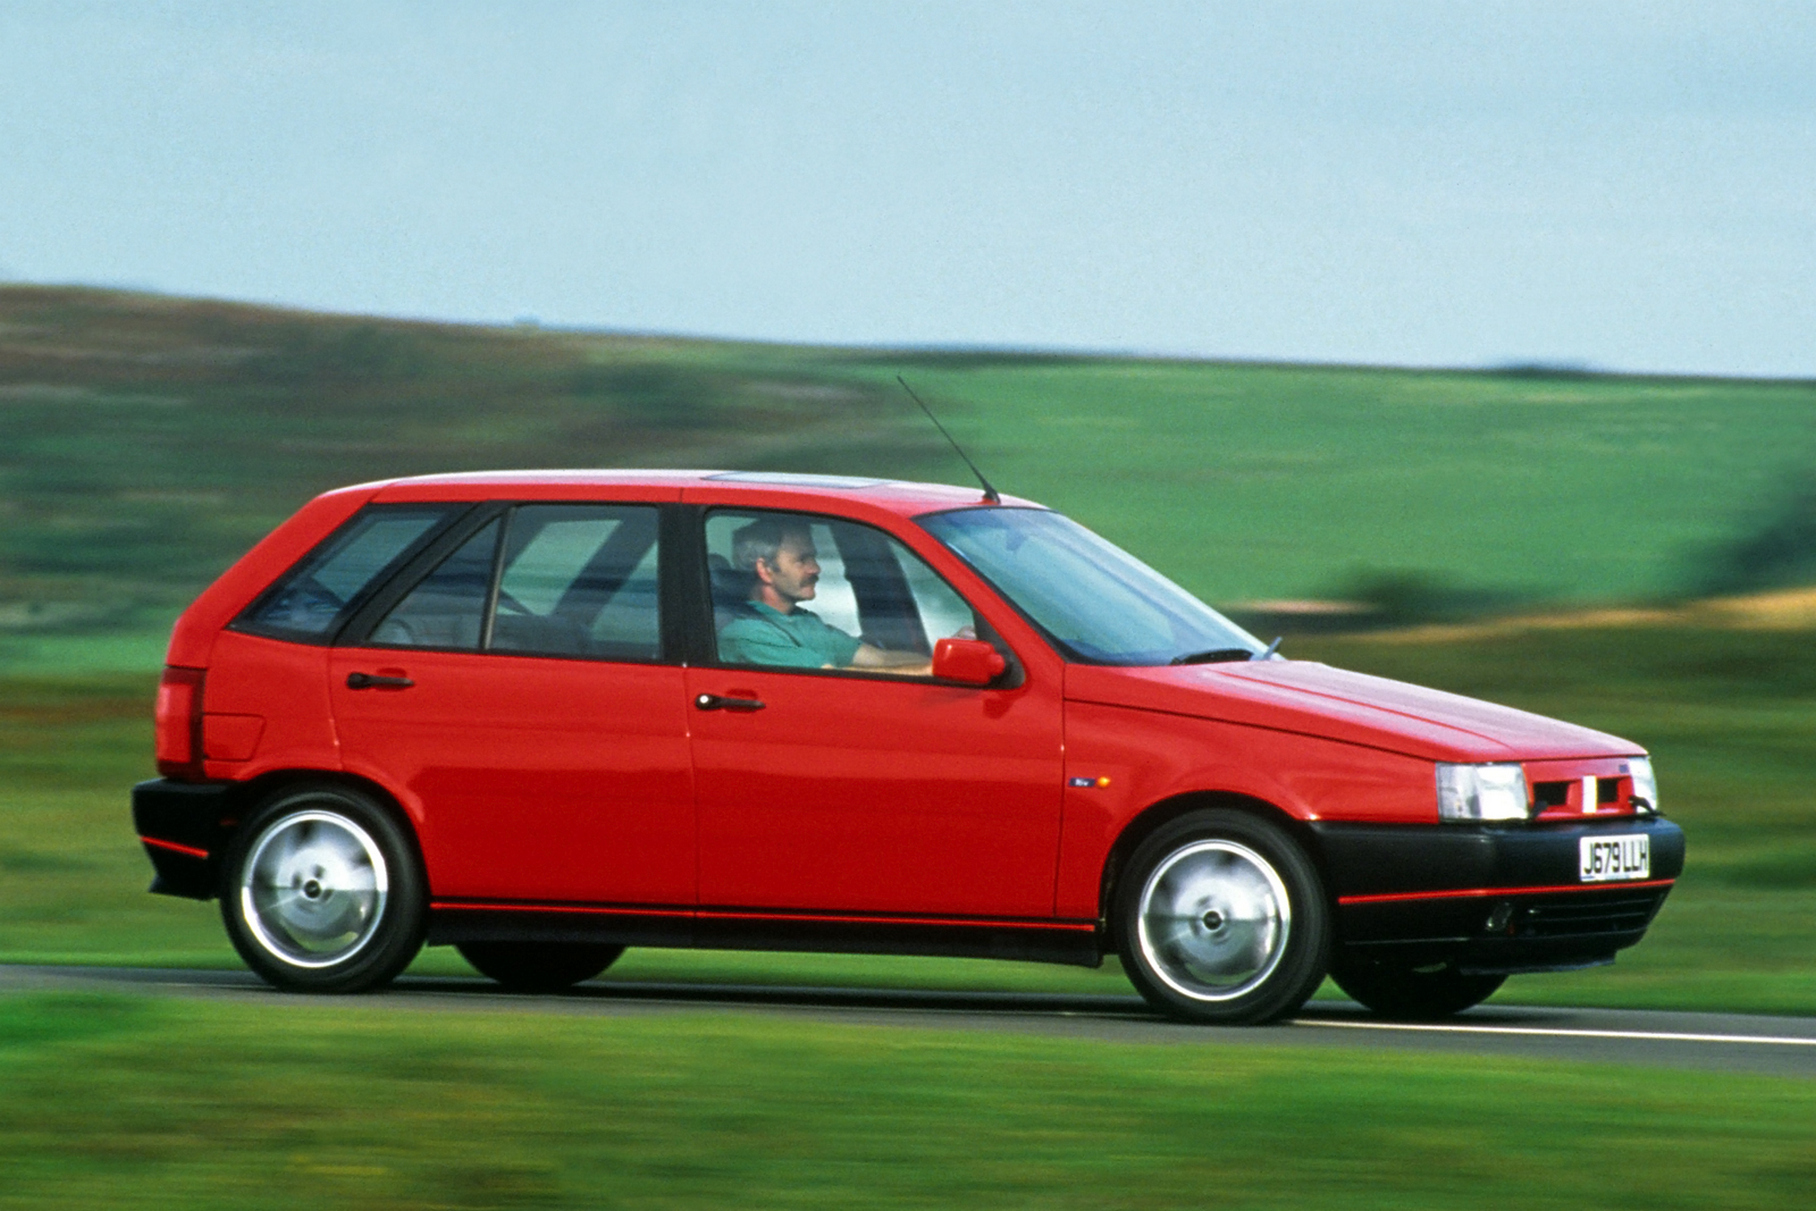 ###  Едва ли вы это вспомните, но хэтчбек Fiat Tipo в 1988 году удостоился звания «Автомобиль года» в Европе. А в 1992-м вышла версия 2.0 i.e. 16V, она же «Sedicivalvole» — его самый заряженный вариант. Название подразумевало, что под капотом стоял легендарный двухлитровый «Fiat Twin Cam» конструкции Аурелио Лампреди в самом совершенном варианте, с 16-клапанной головкой. Двигатель мощностью 148 лошадиных сил — по тем временам это был серьёзный заряд для хэтчбека гольф-класса.